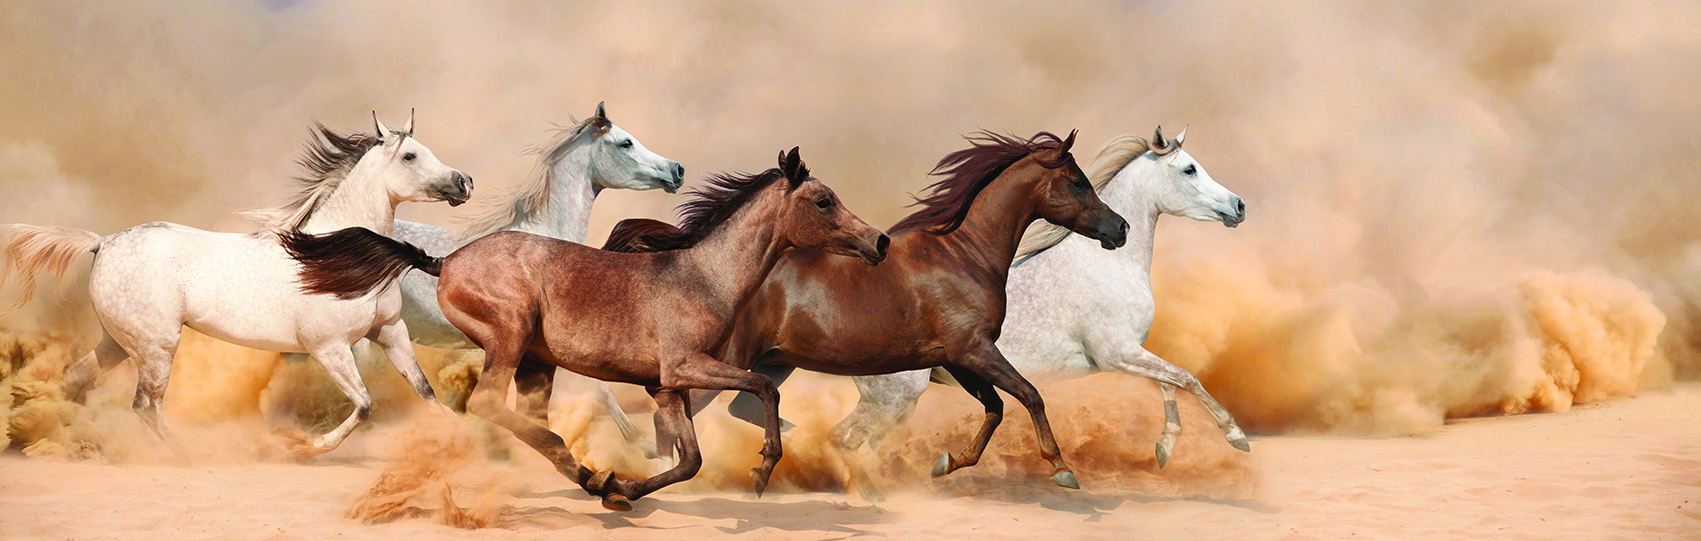 Hình ảnh tranh dán tường ngựa mã đáo humandecor----6276